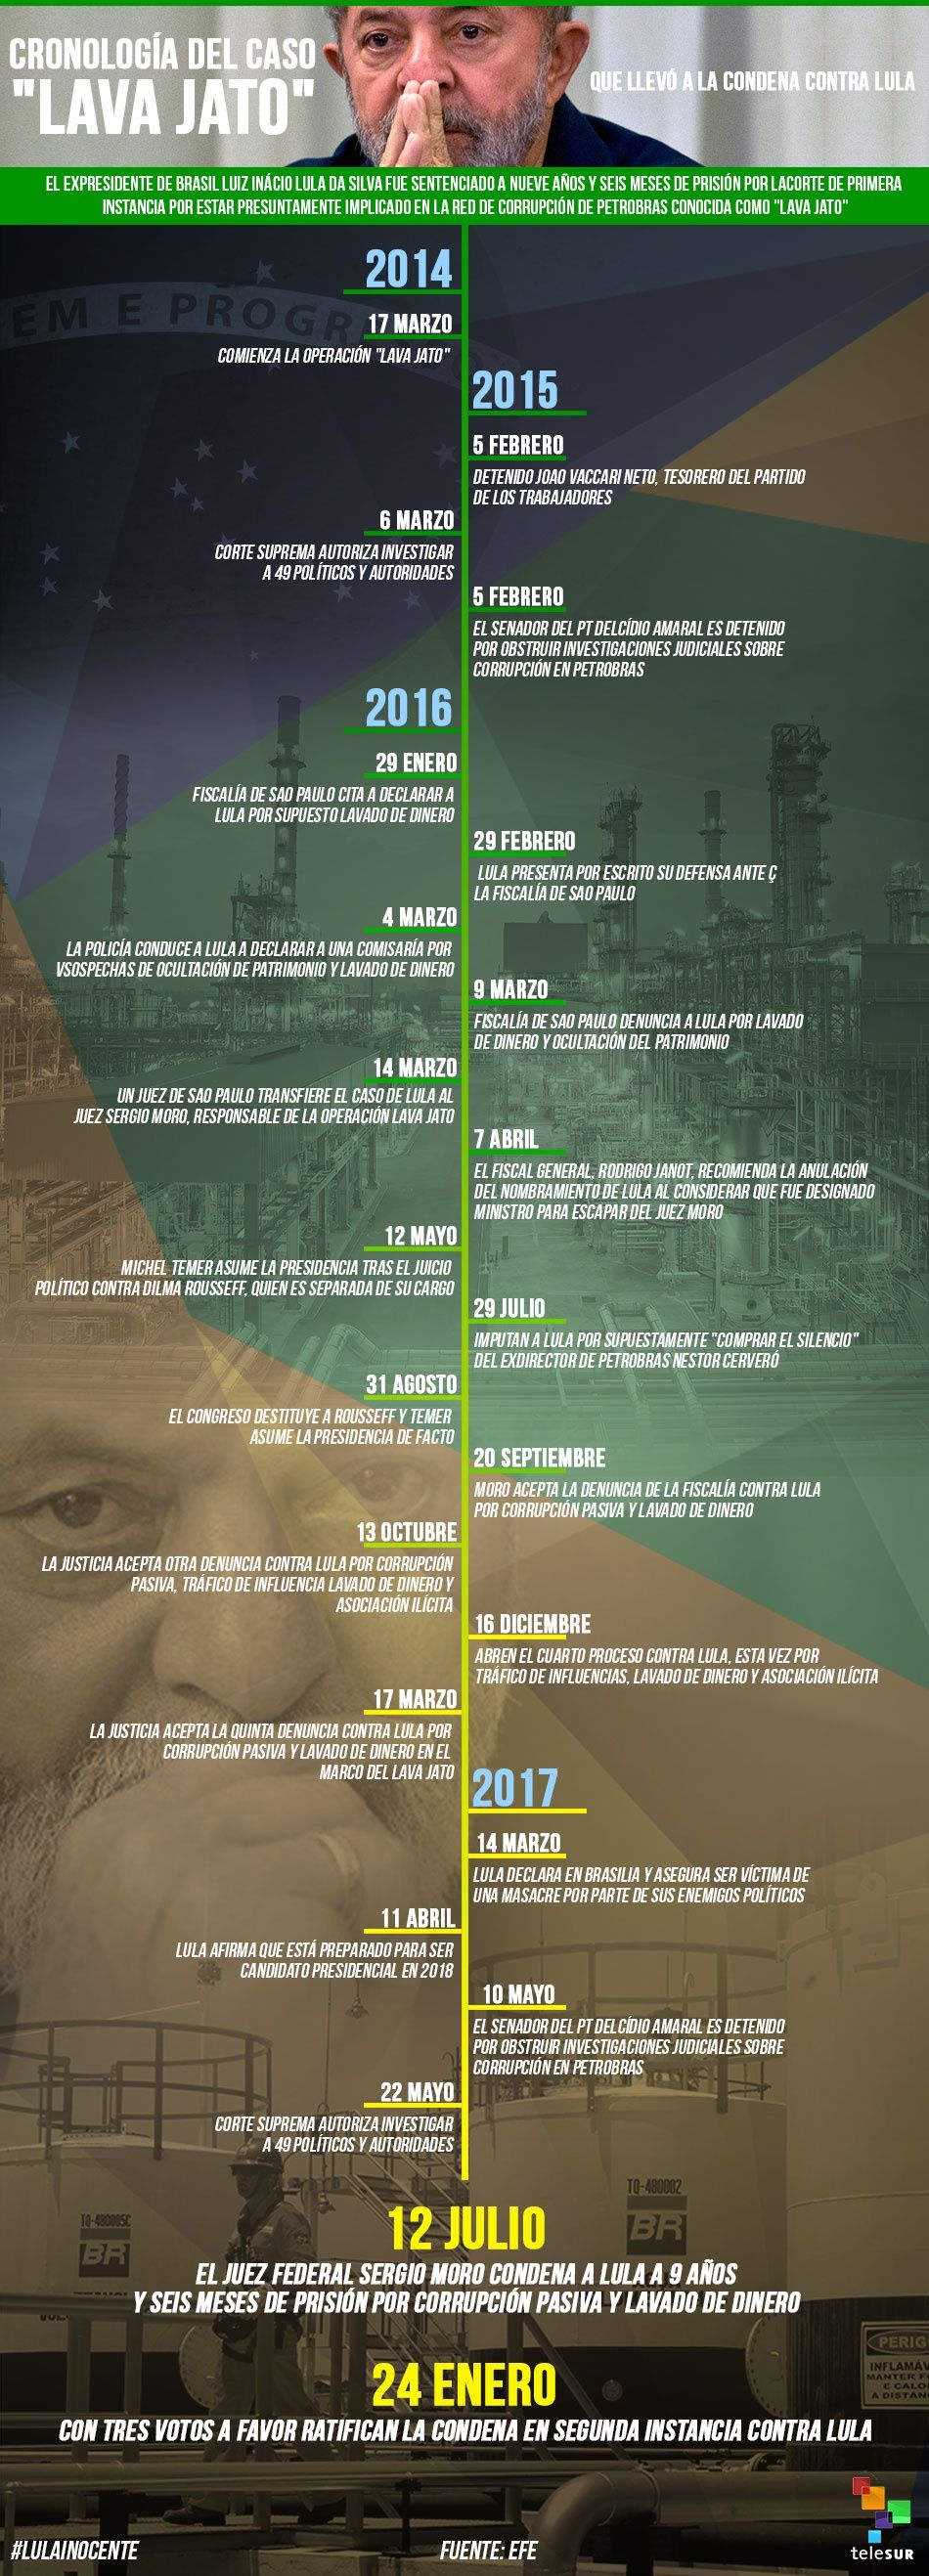 Cronología del caso "Lava Jato" que llevó a la condena contra Lula